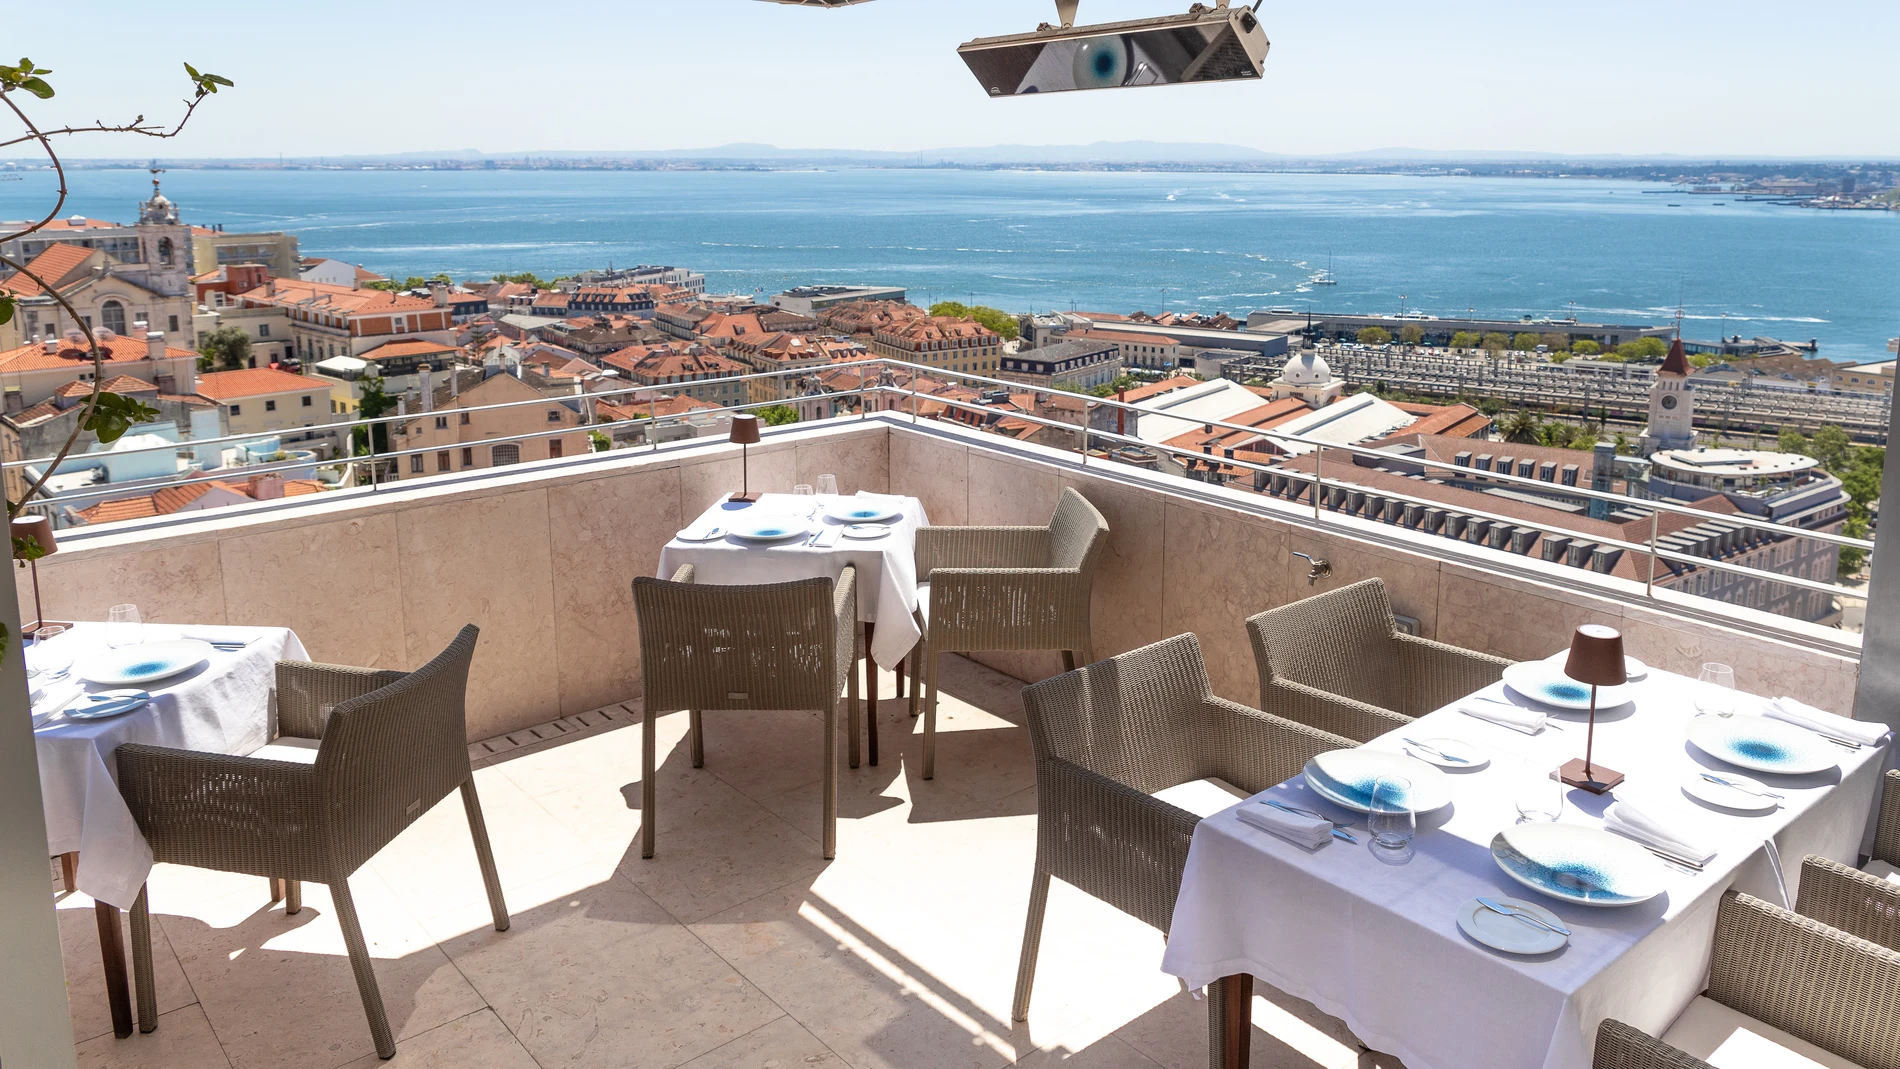 Comer con estas vistas es una experiencia inolvidable. Foto cortesía del Hotel Verride.